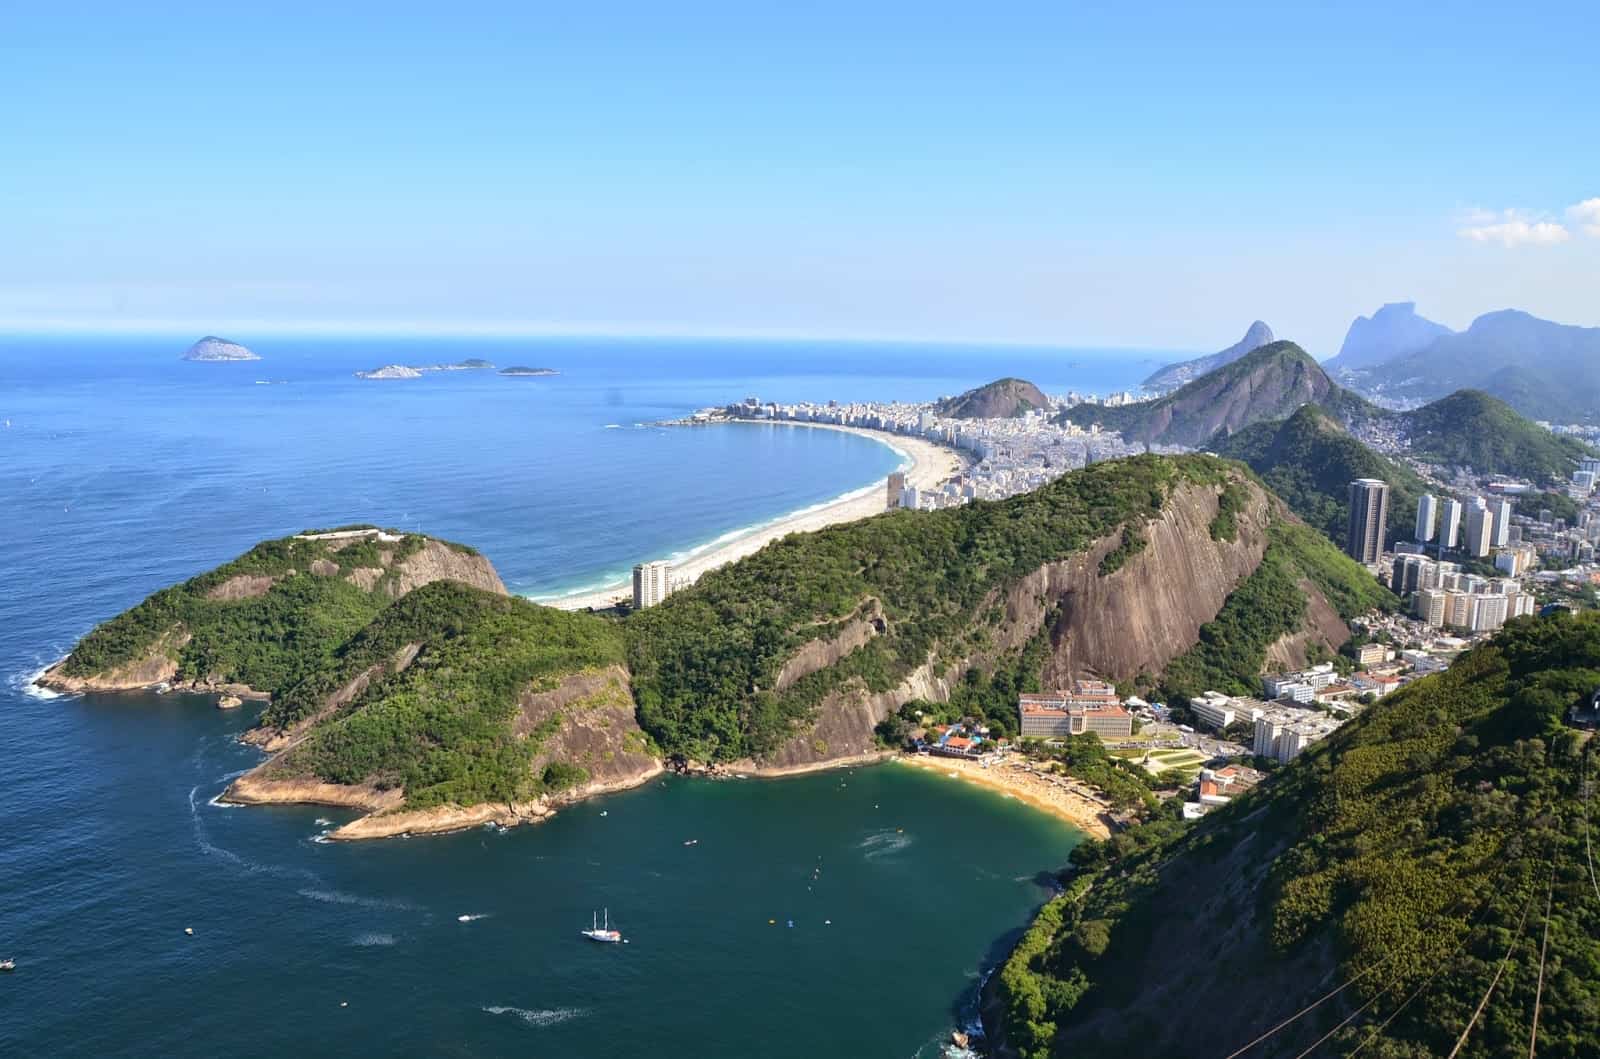 Looking towards Copacabana from Sugarloaf Mountain in Rio de Janeiro, Brazil